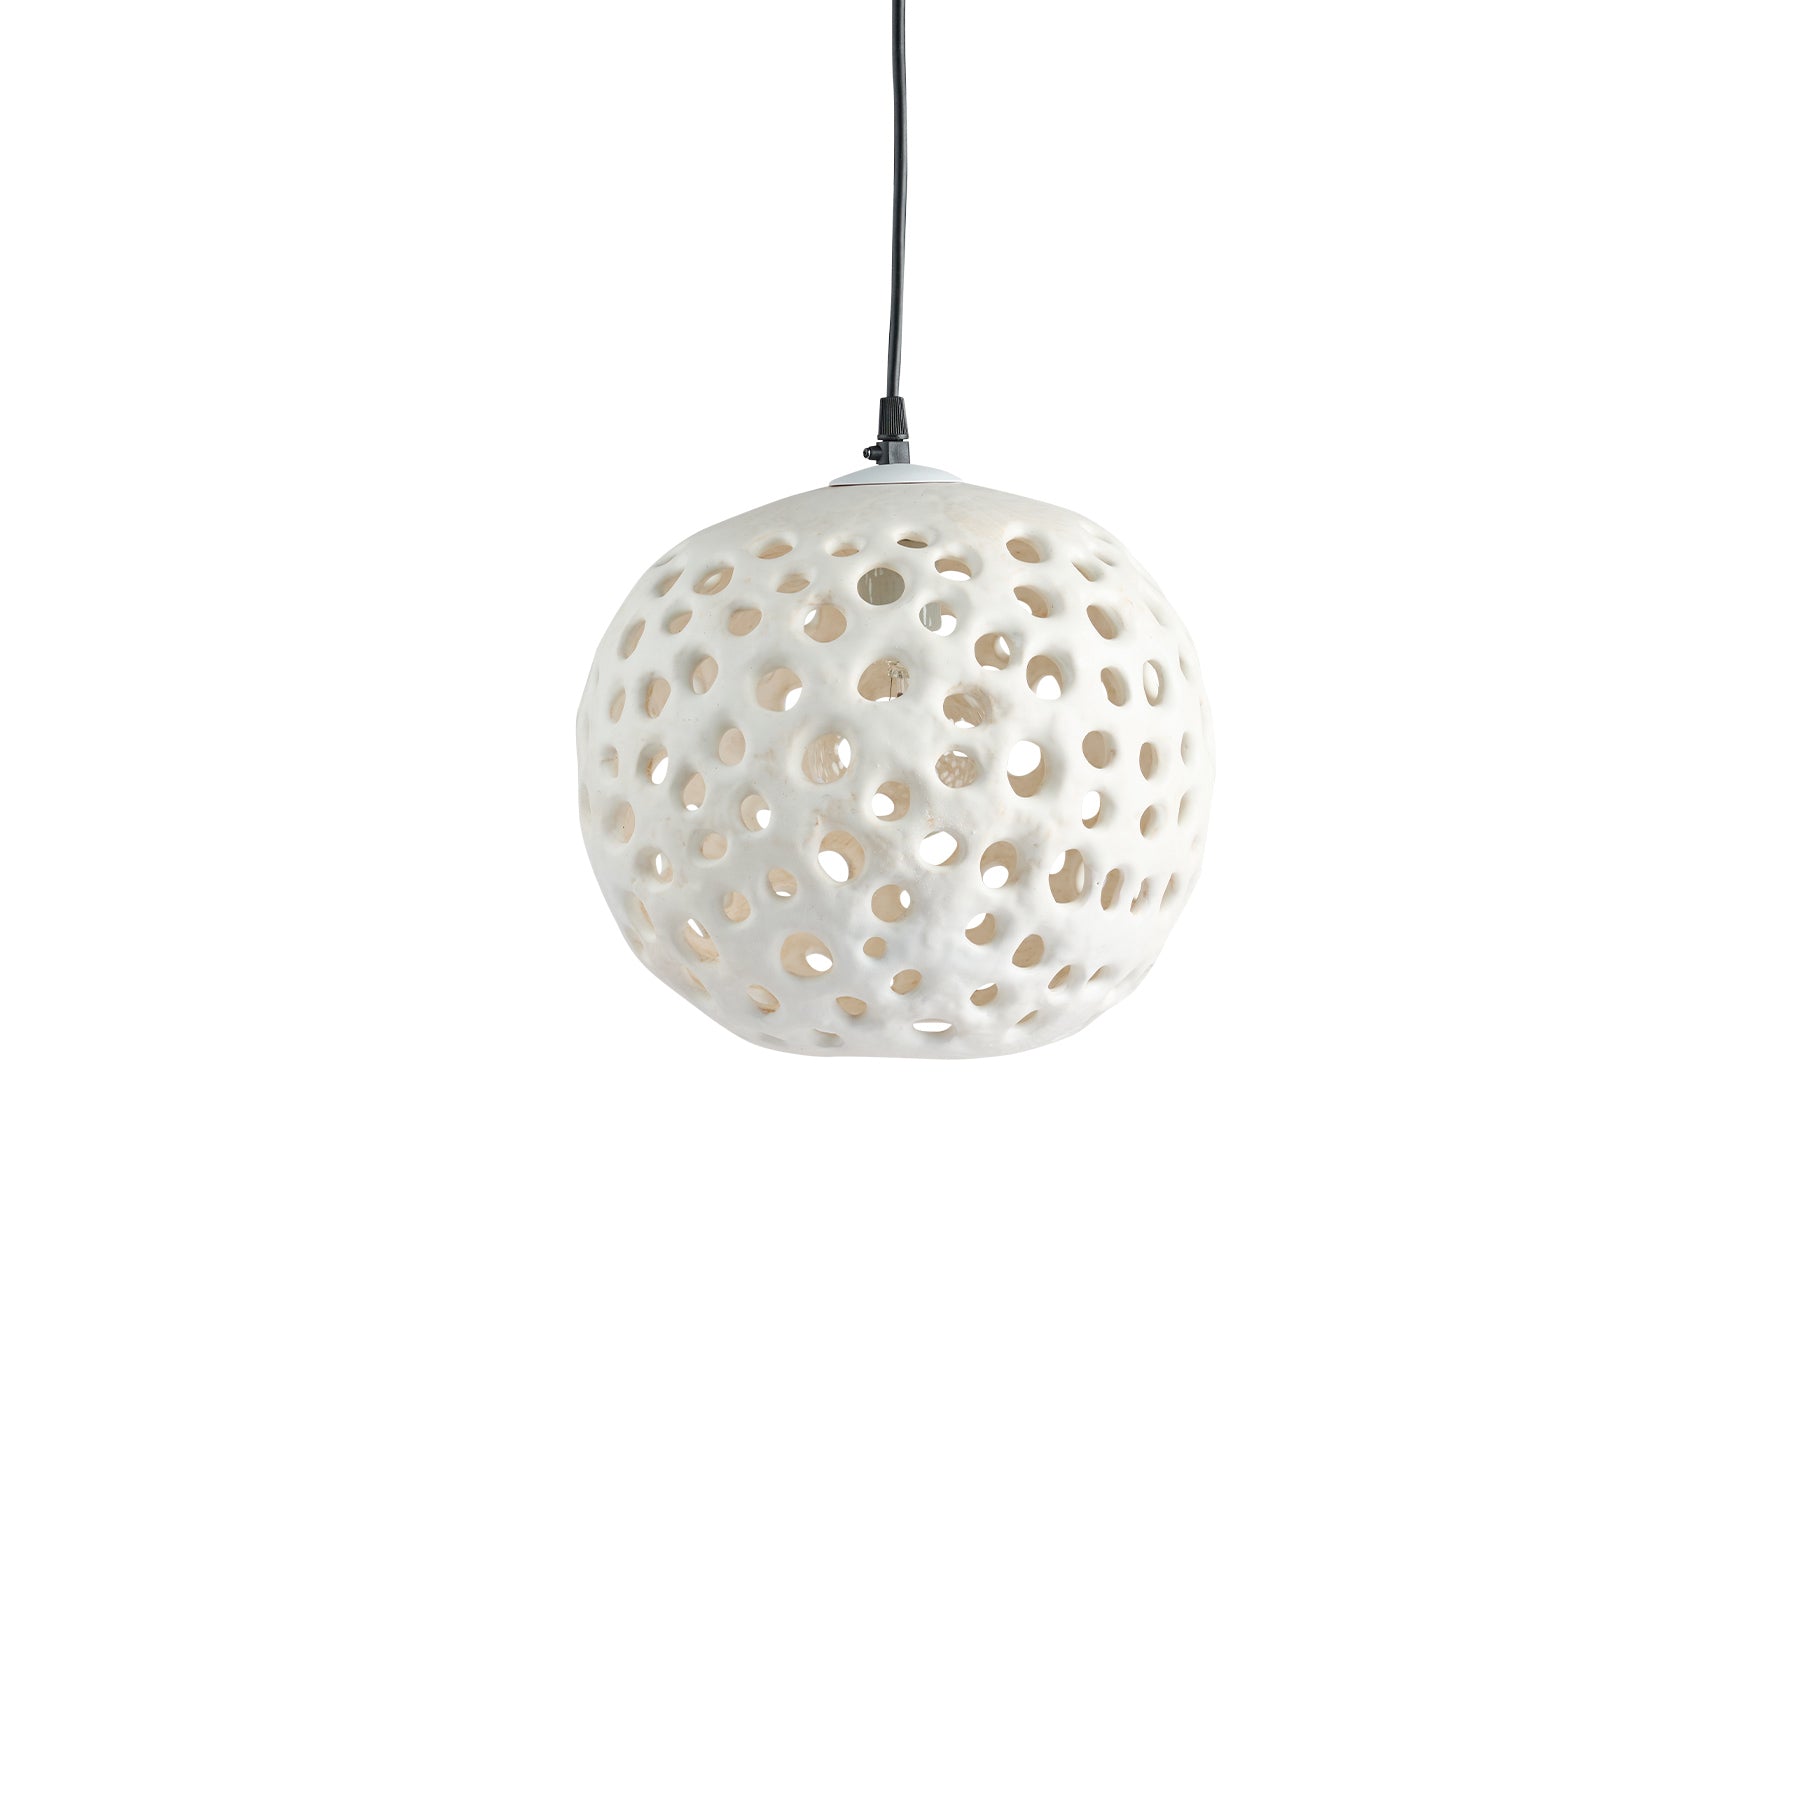 10" Ceramic Hanging Lantern in White Zoom Image 1